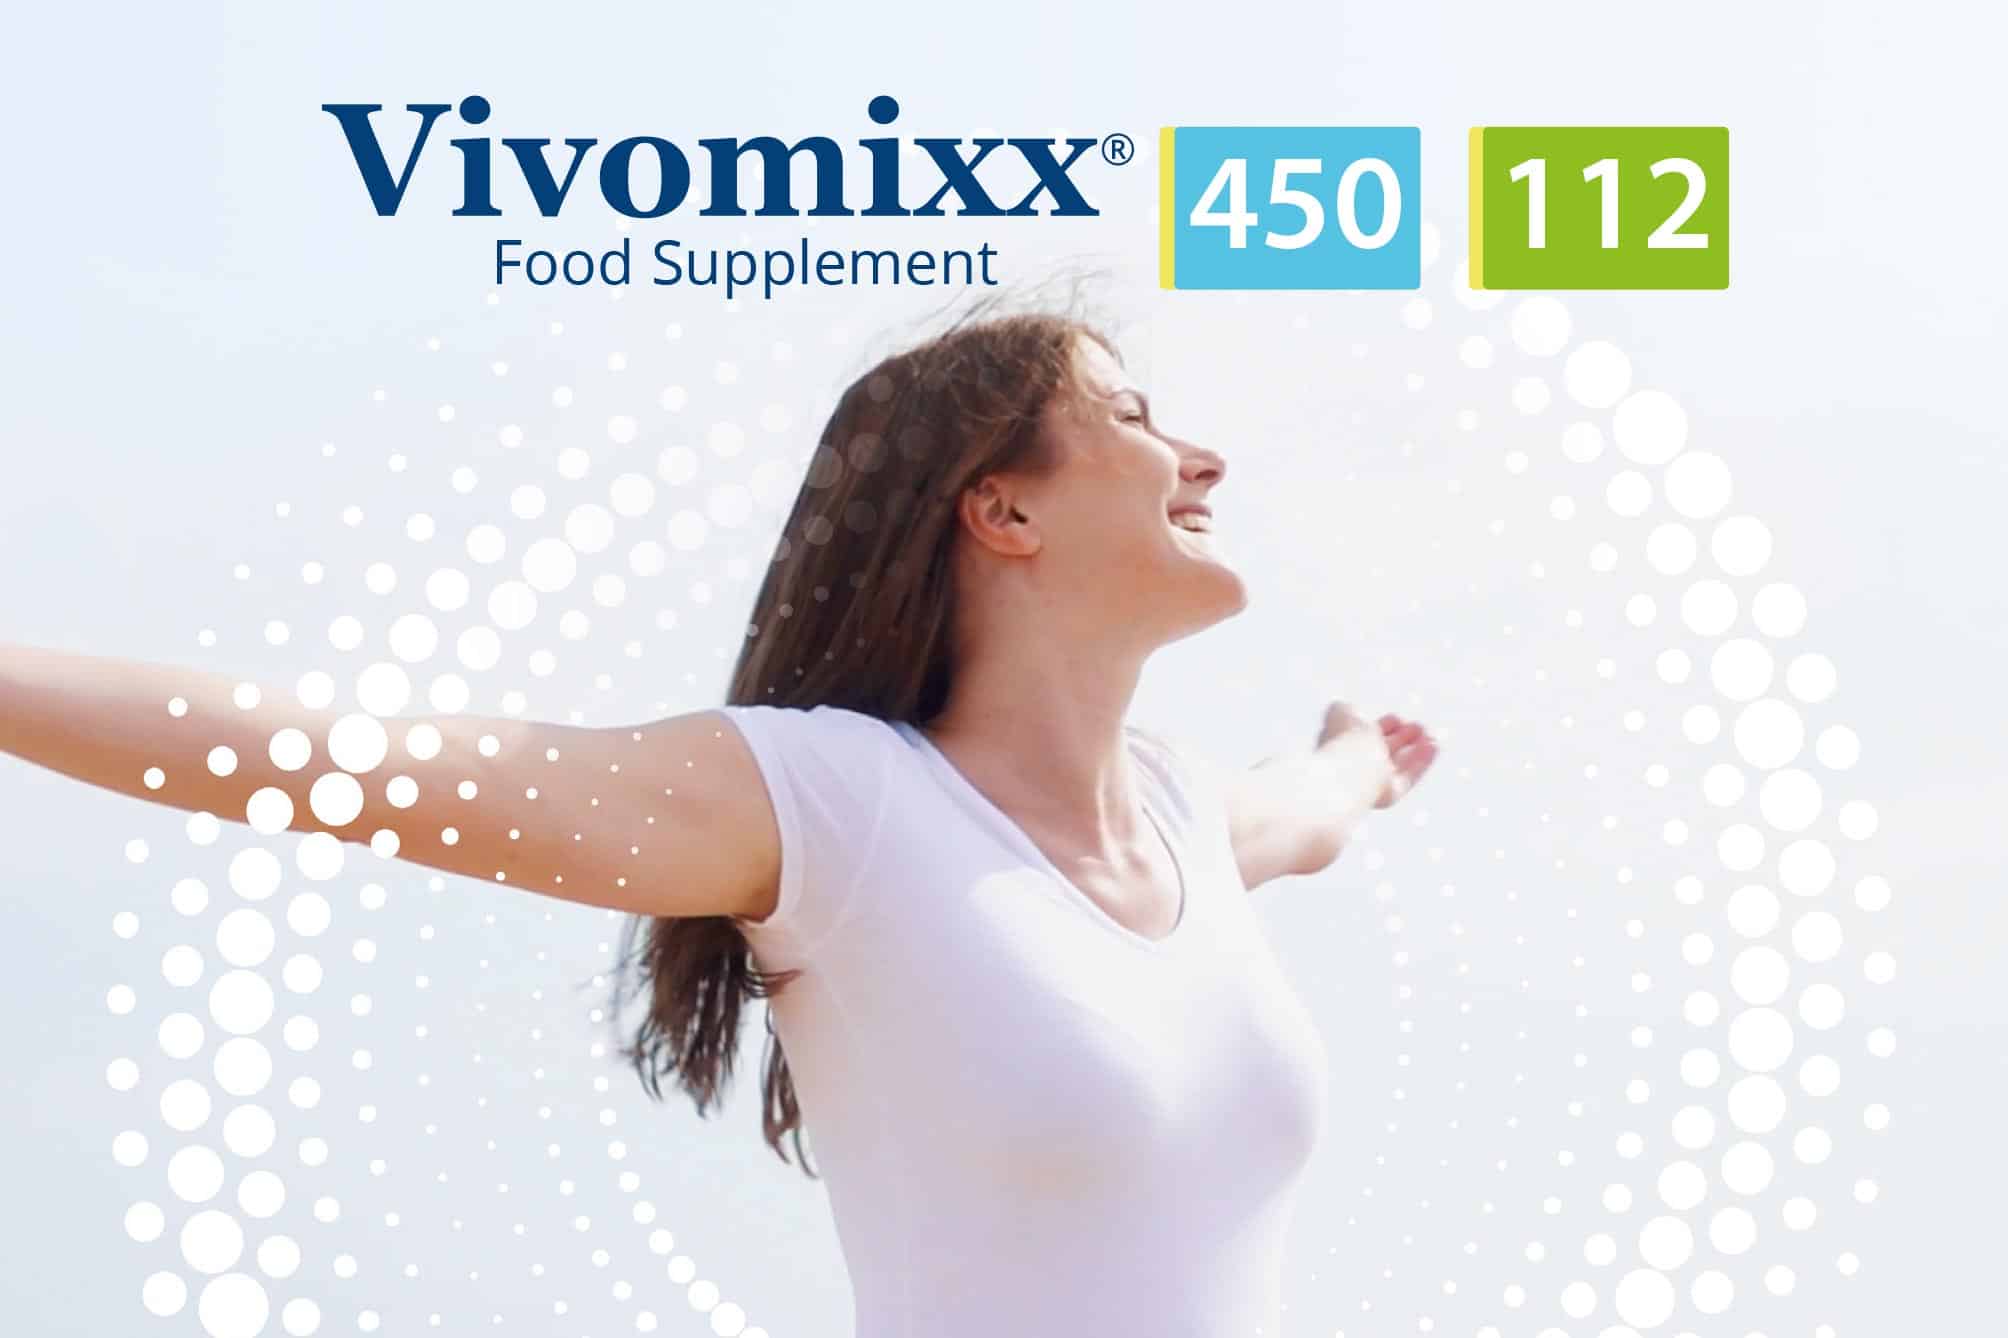 Vivomixx microbiotics